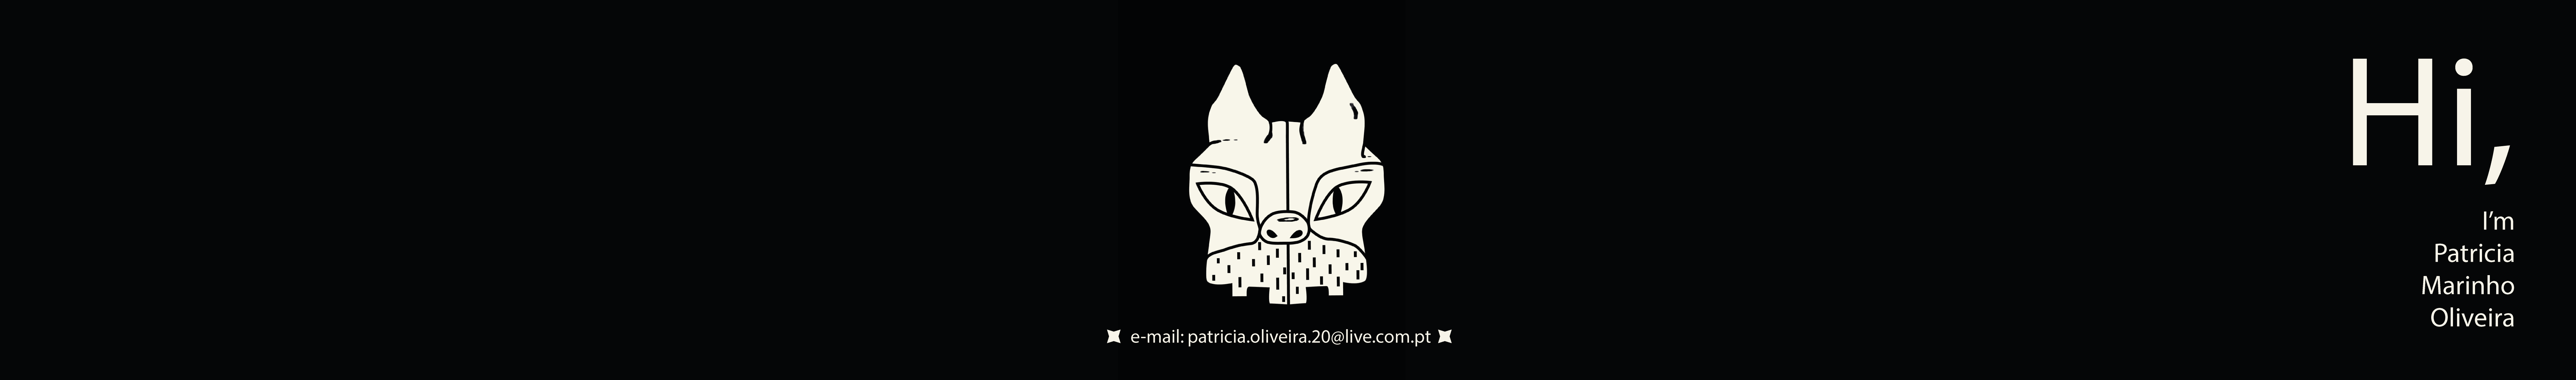 Patrícia Marinho Oliveira profil başlığı